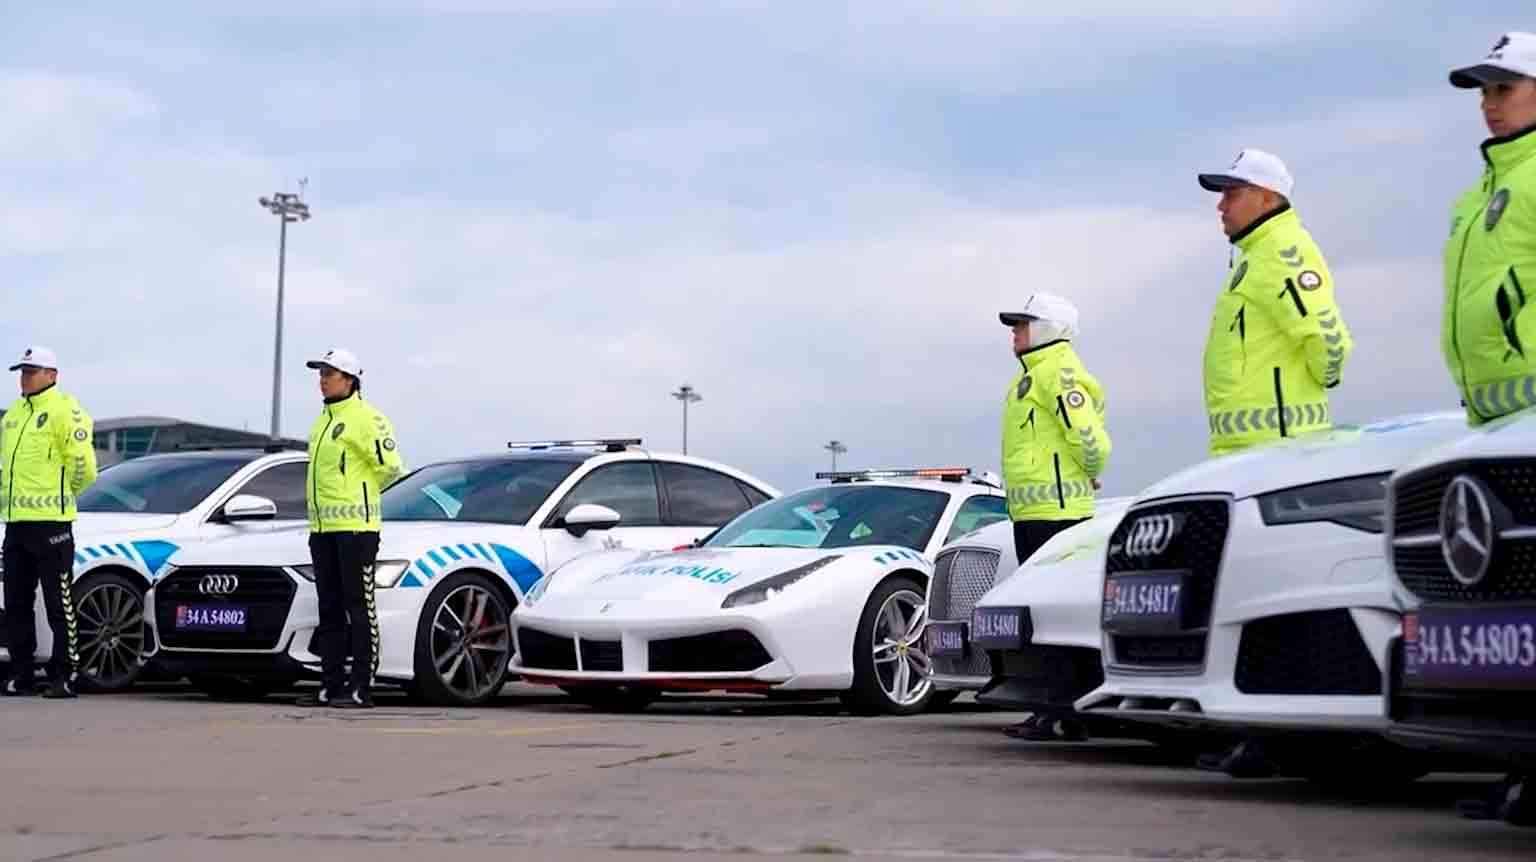 Policja Stambułu włącza skonfiskowane Ferrari, Bentleye i Porsche z operacji antynarkotykowej do floty patrolowej. Zdjęcia i filmy: Reprodução Twitter @AliYerlikaya 